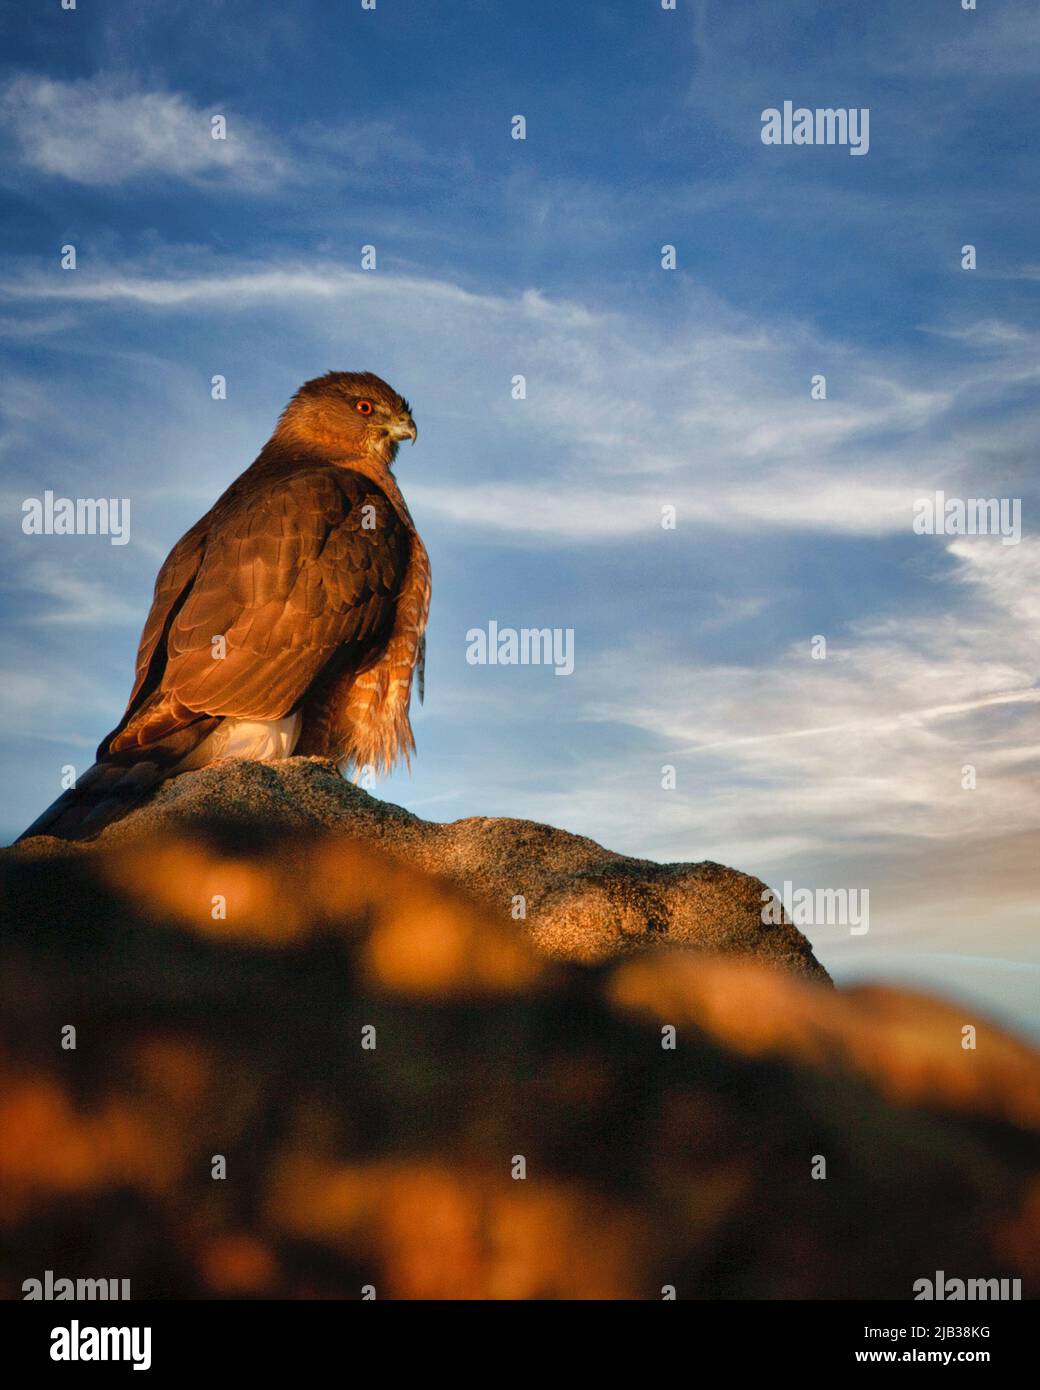 Ein Falke der Kutscher wärmt in der Morgensonne, während er in der hohen Wüste von Arizona nach Beute Ausschau halten kann. Stockfoto